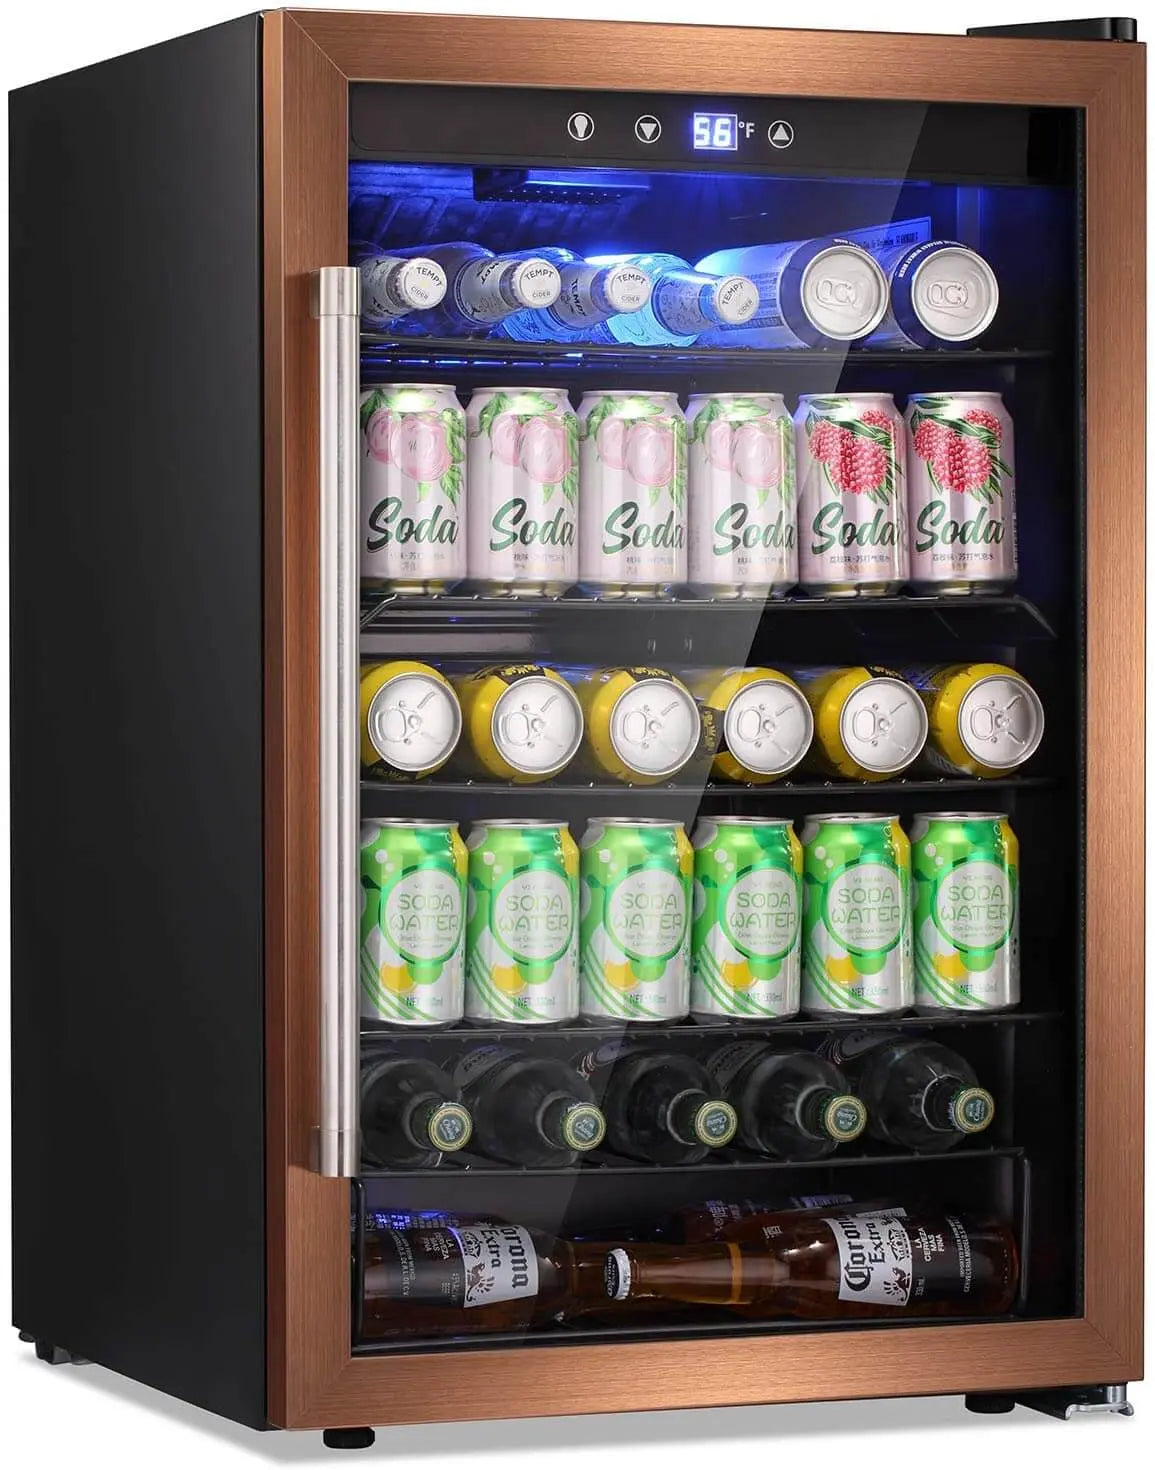 4.5Cu.ft. Beverage Refrigerator Cooler - 126 Can,Gold